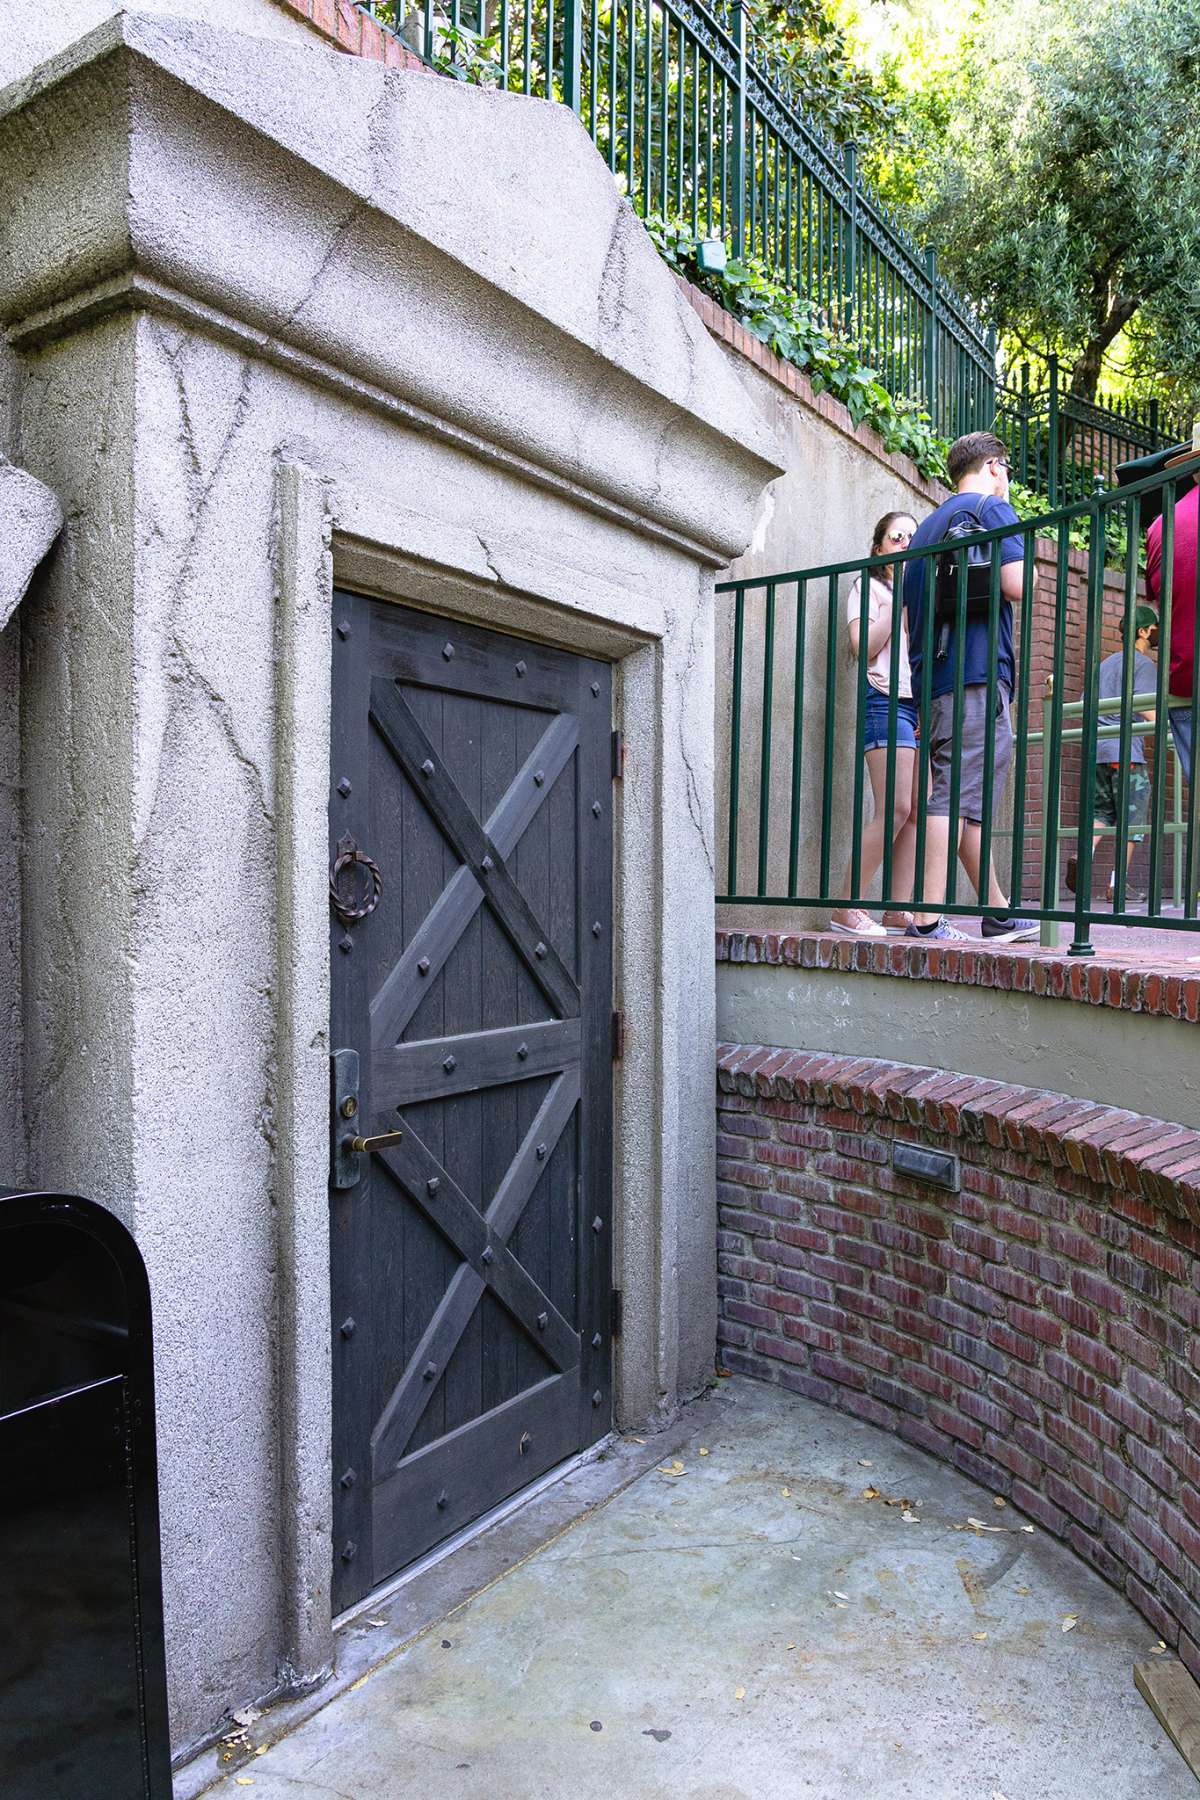 La atracción Haunted Mansion en Disneyland en mayo de 2021.